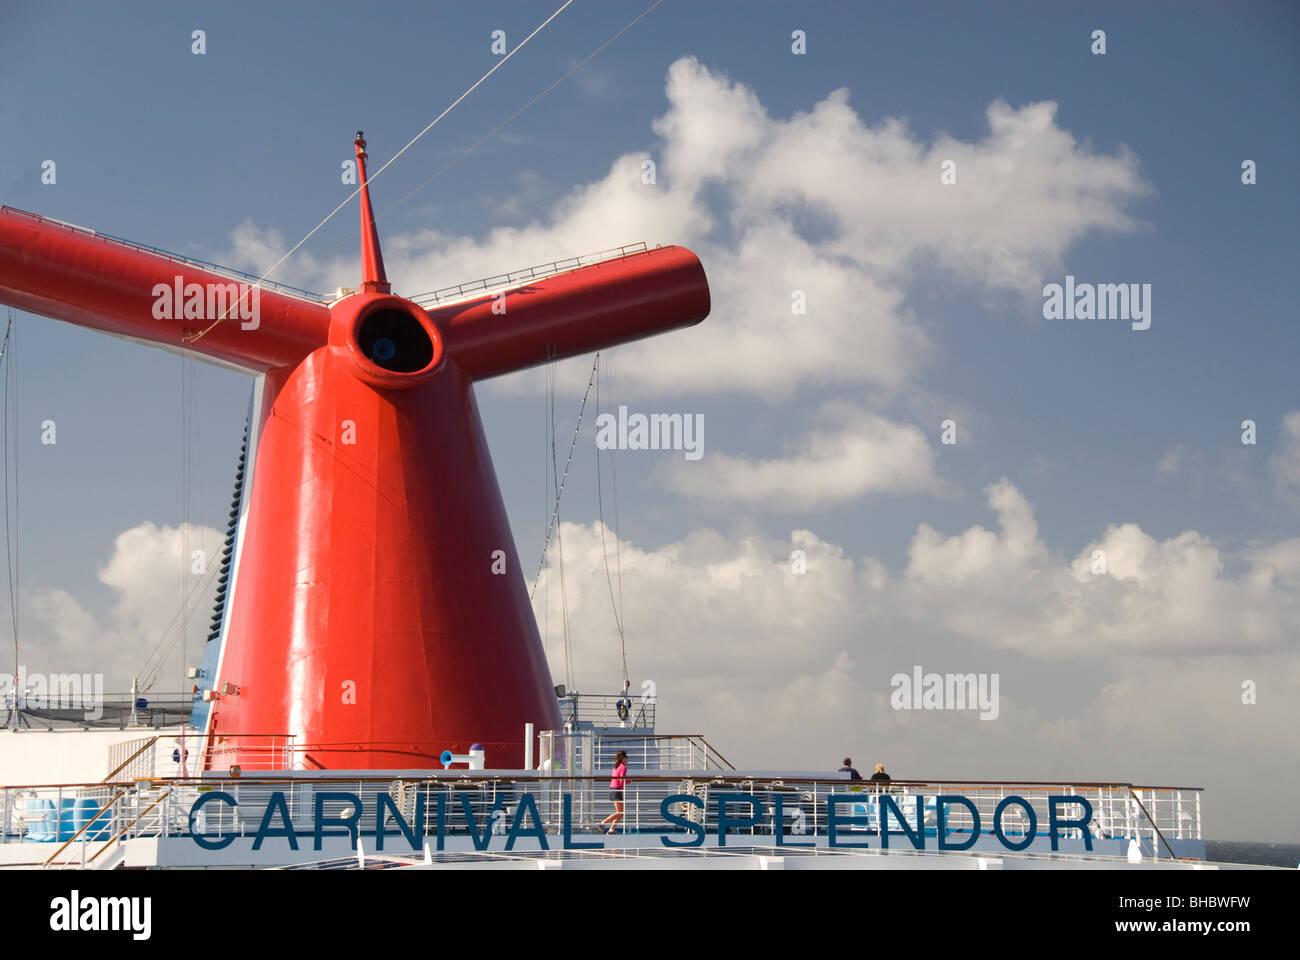 El Splendor de Carnival Cruise Line la plataforma de deportes de pista de jogging Foto de stock